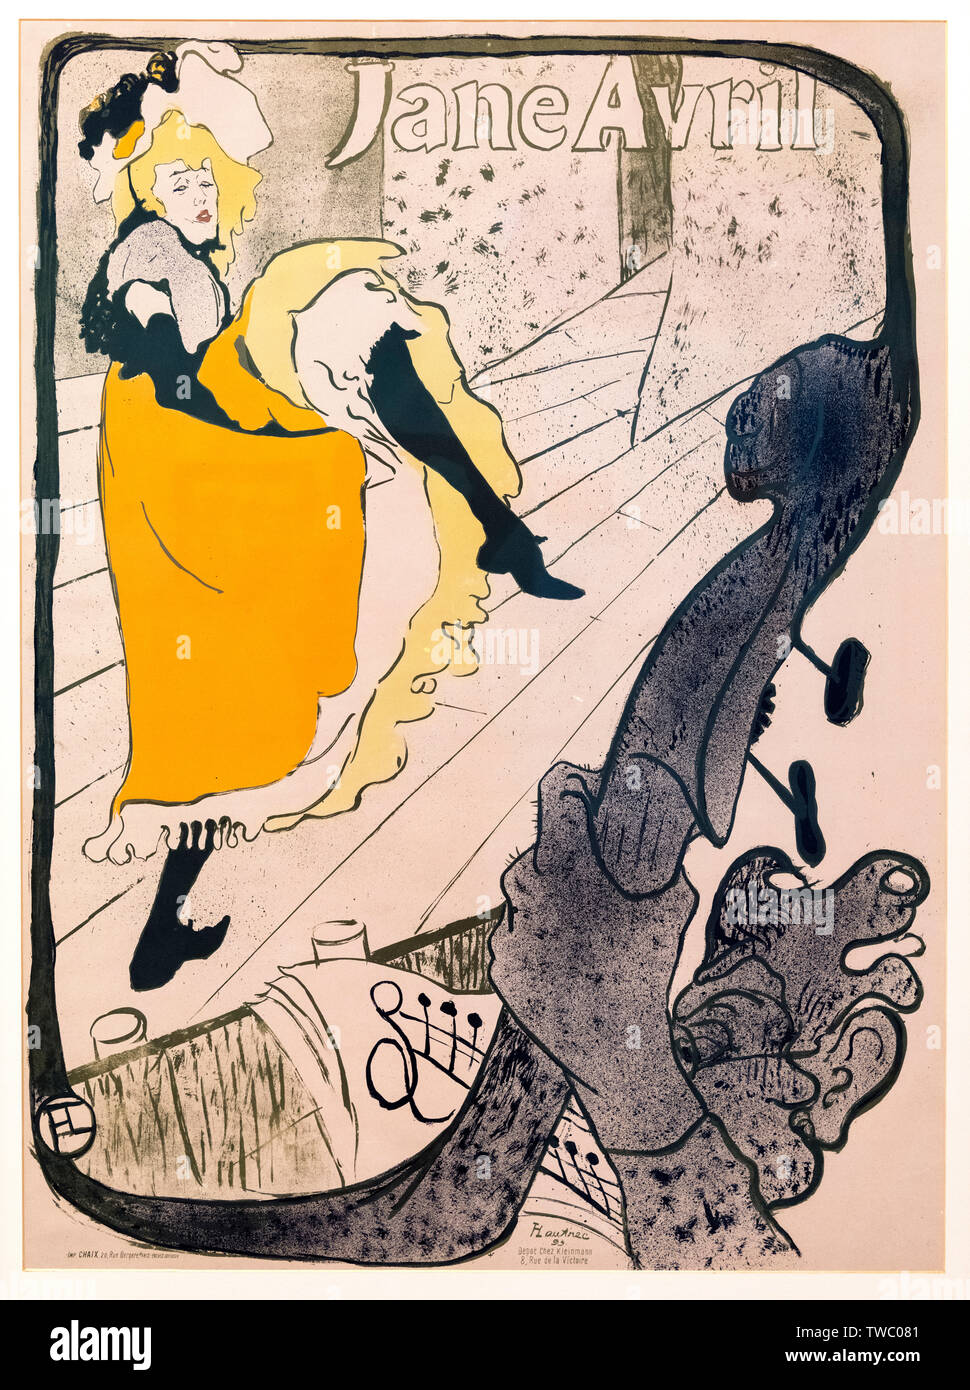 'Jane Avril au Jardin de Paris' (Jane Avril au Jardin de Paris) par Henri de Toulouse-Lautrec (1864-1901), le pinceau et la lithographie, 1893 projections Banque D'Images